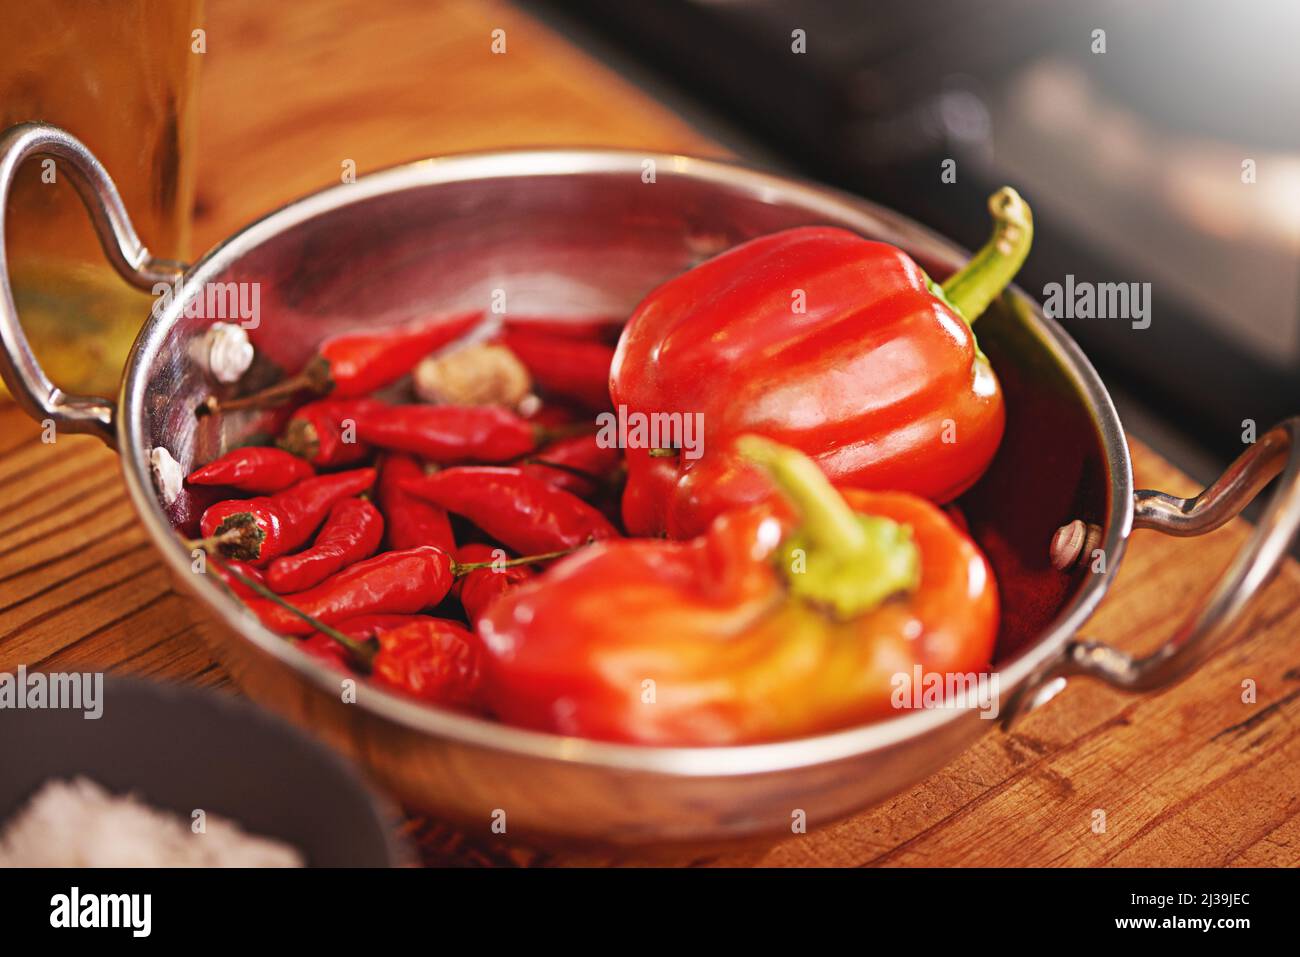 A algunos les gusta el calor. Tiro de una sartén llena de pimientos rojos y chiles sobre una mesa. Foto de stock